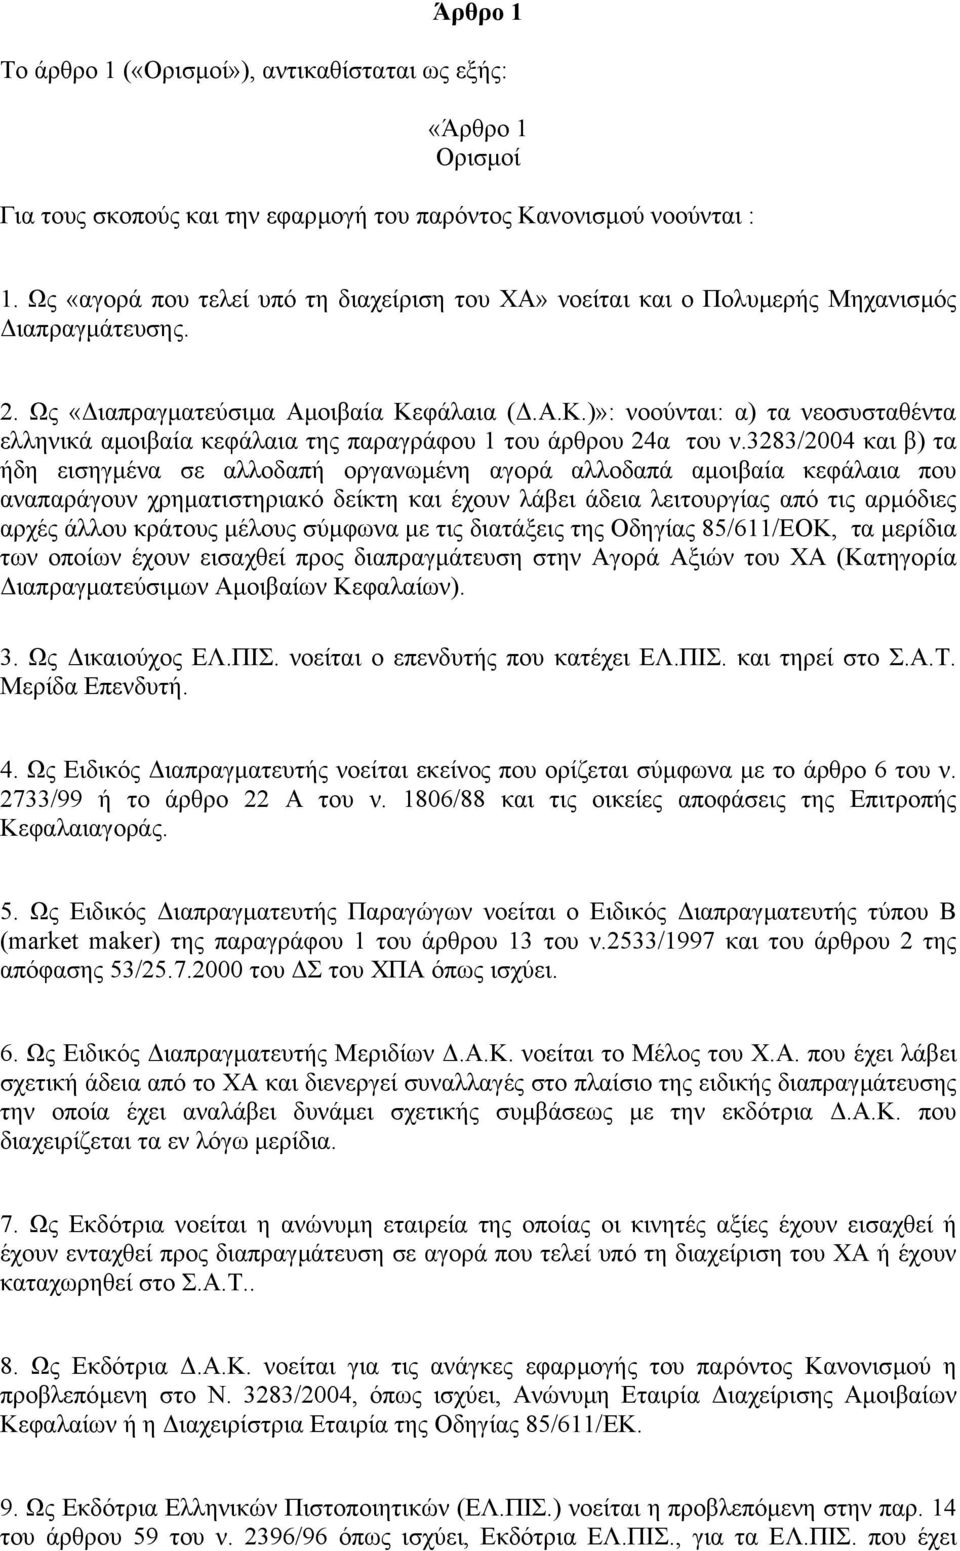 φάλαια (.Α.Κ.)»: νοούνται: α) τα νεοσυσταθέντα ελληνικά αµοιβαία κεφάλαια της παραγράφου 1 του άρθρου 24α του ν.